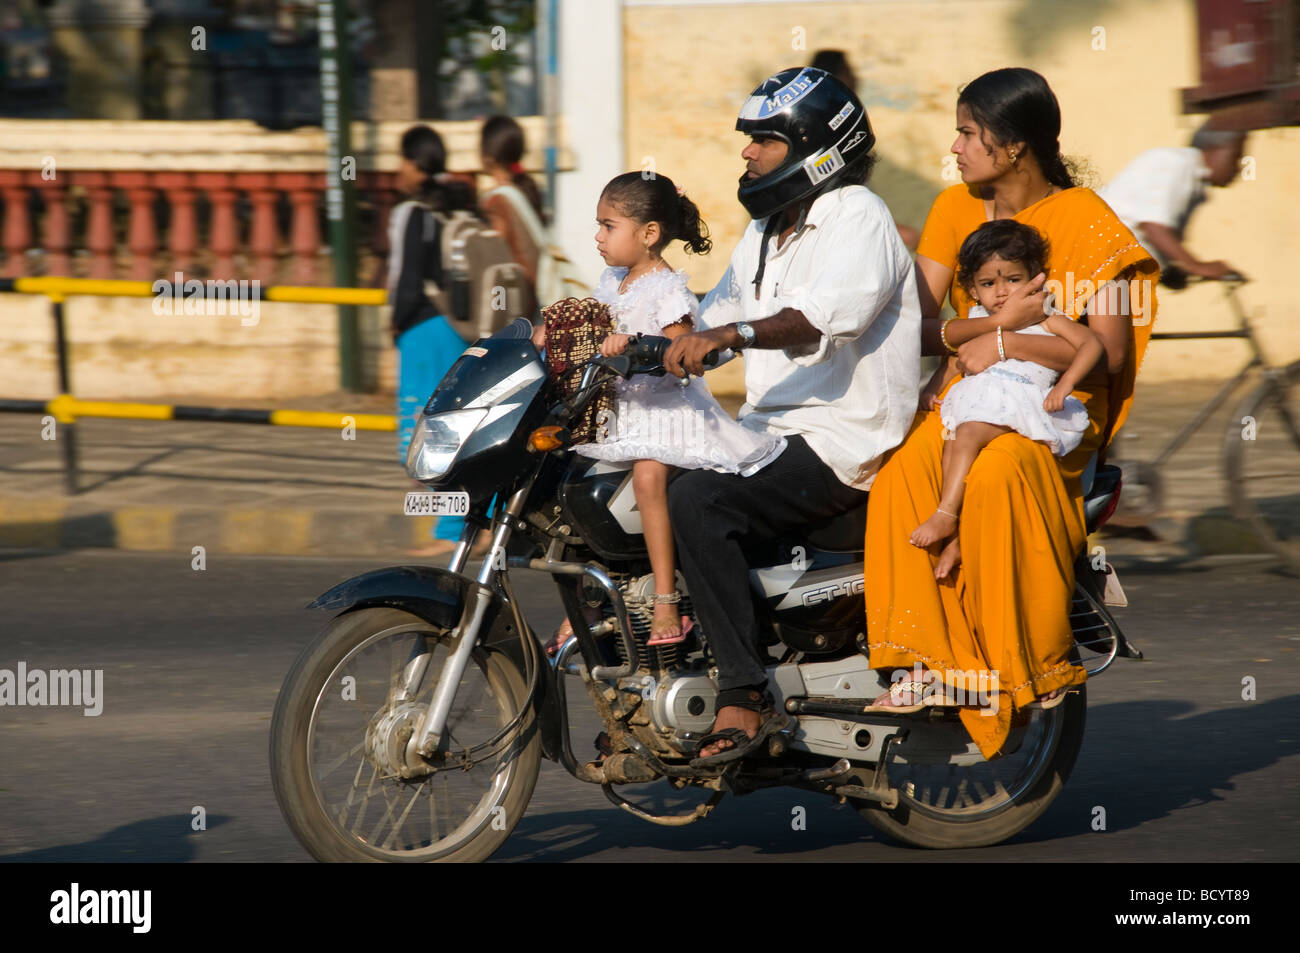 Eine indische Familie auf ein Motorrad in Indien Ratan Tata hat gesagt, da ganze Famiies auf einem Fahrrad seine Inspiration für den Nano war Stockfoto